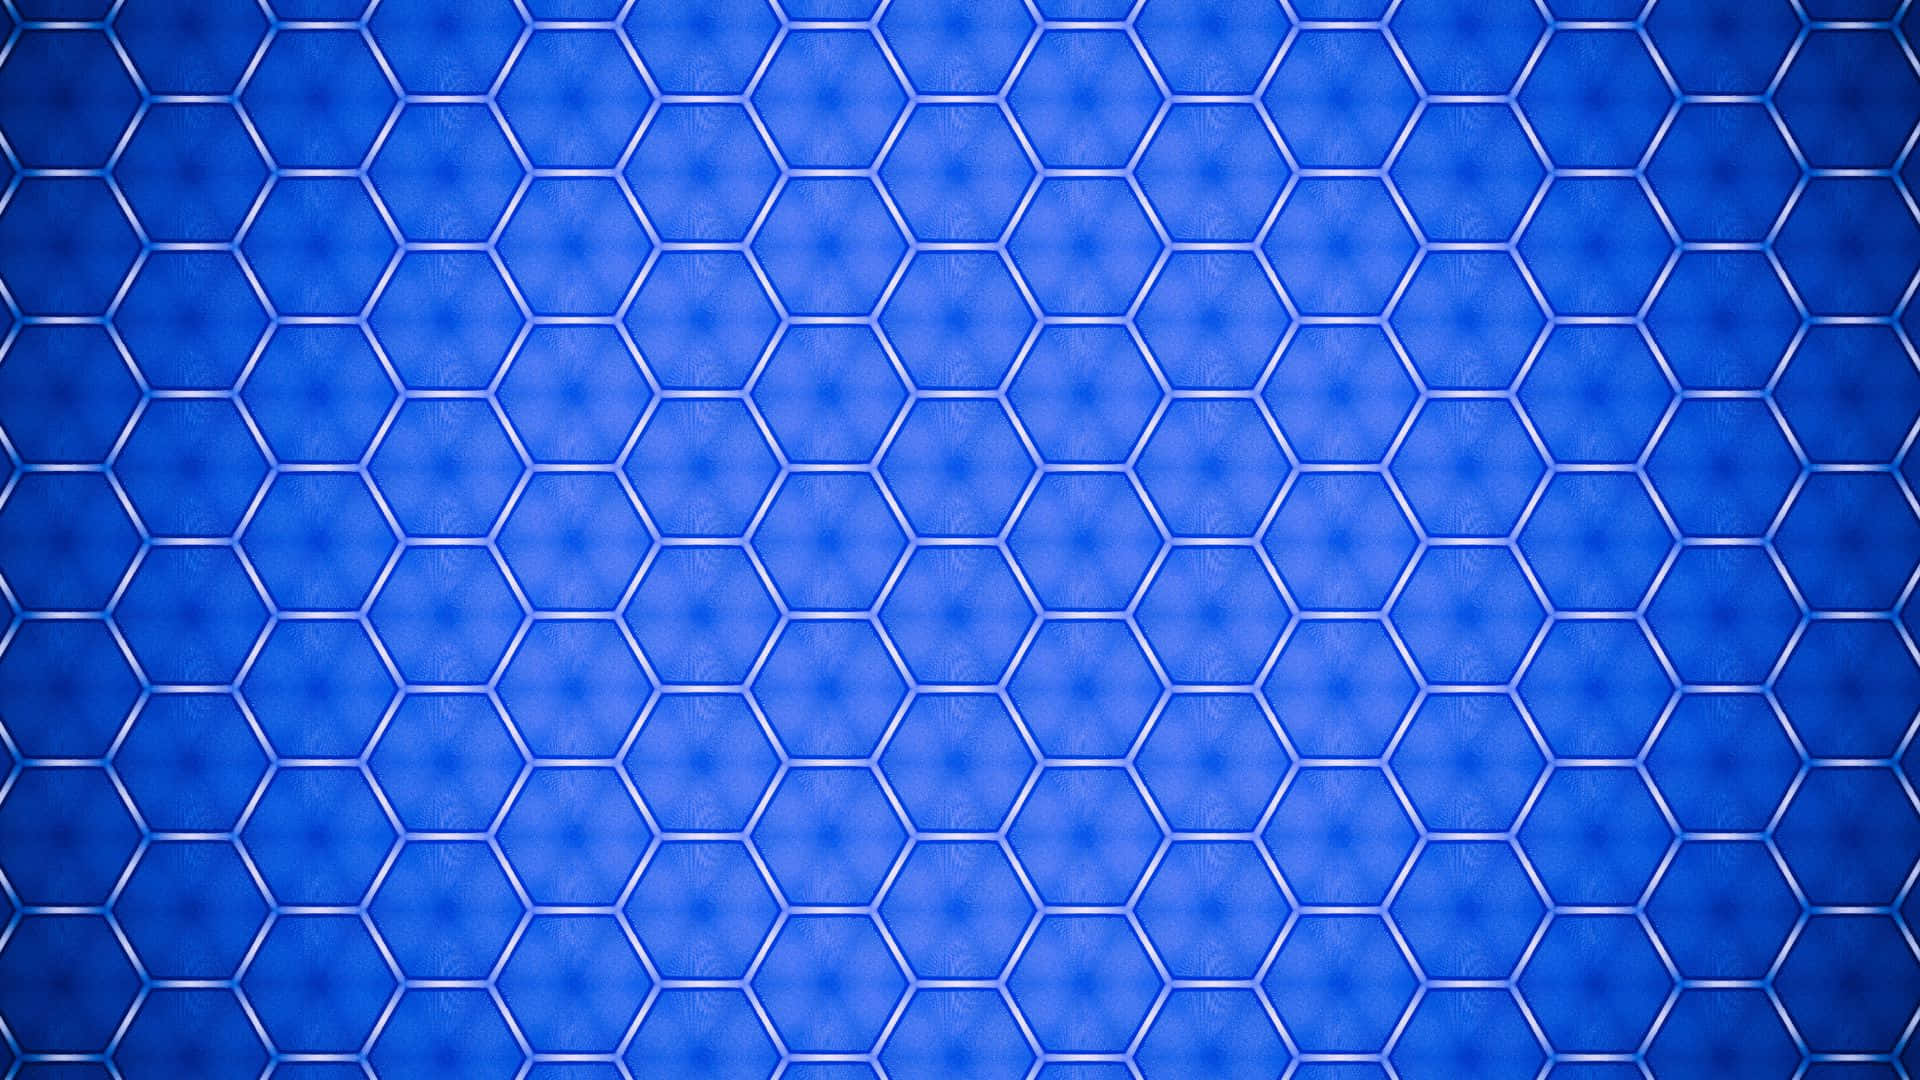 Patrónhexagonal En Azul Para Pc Fondo de pantalla